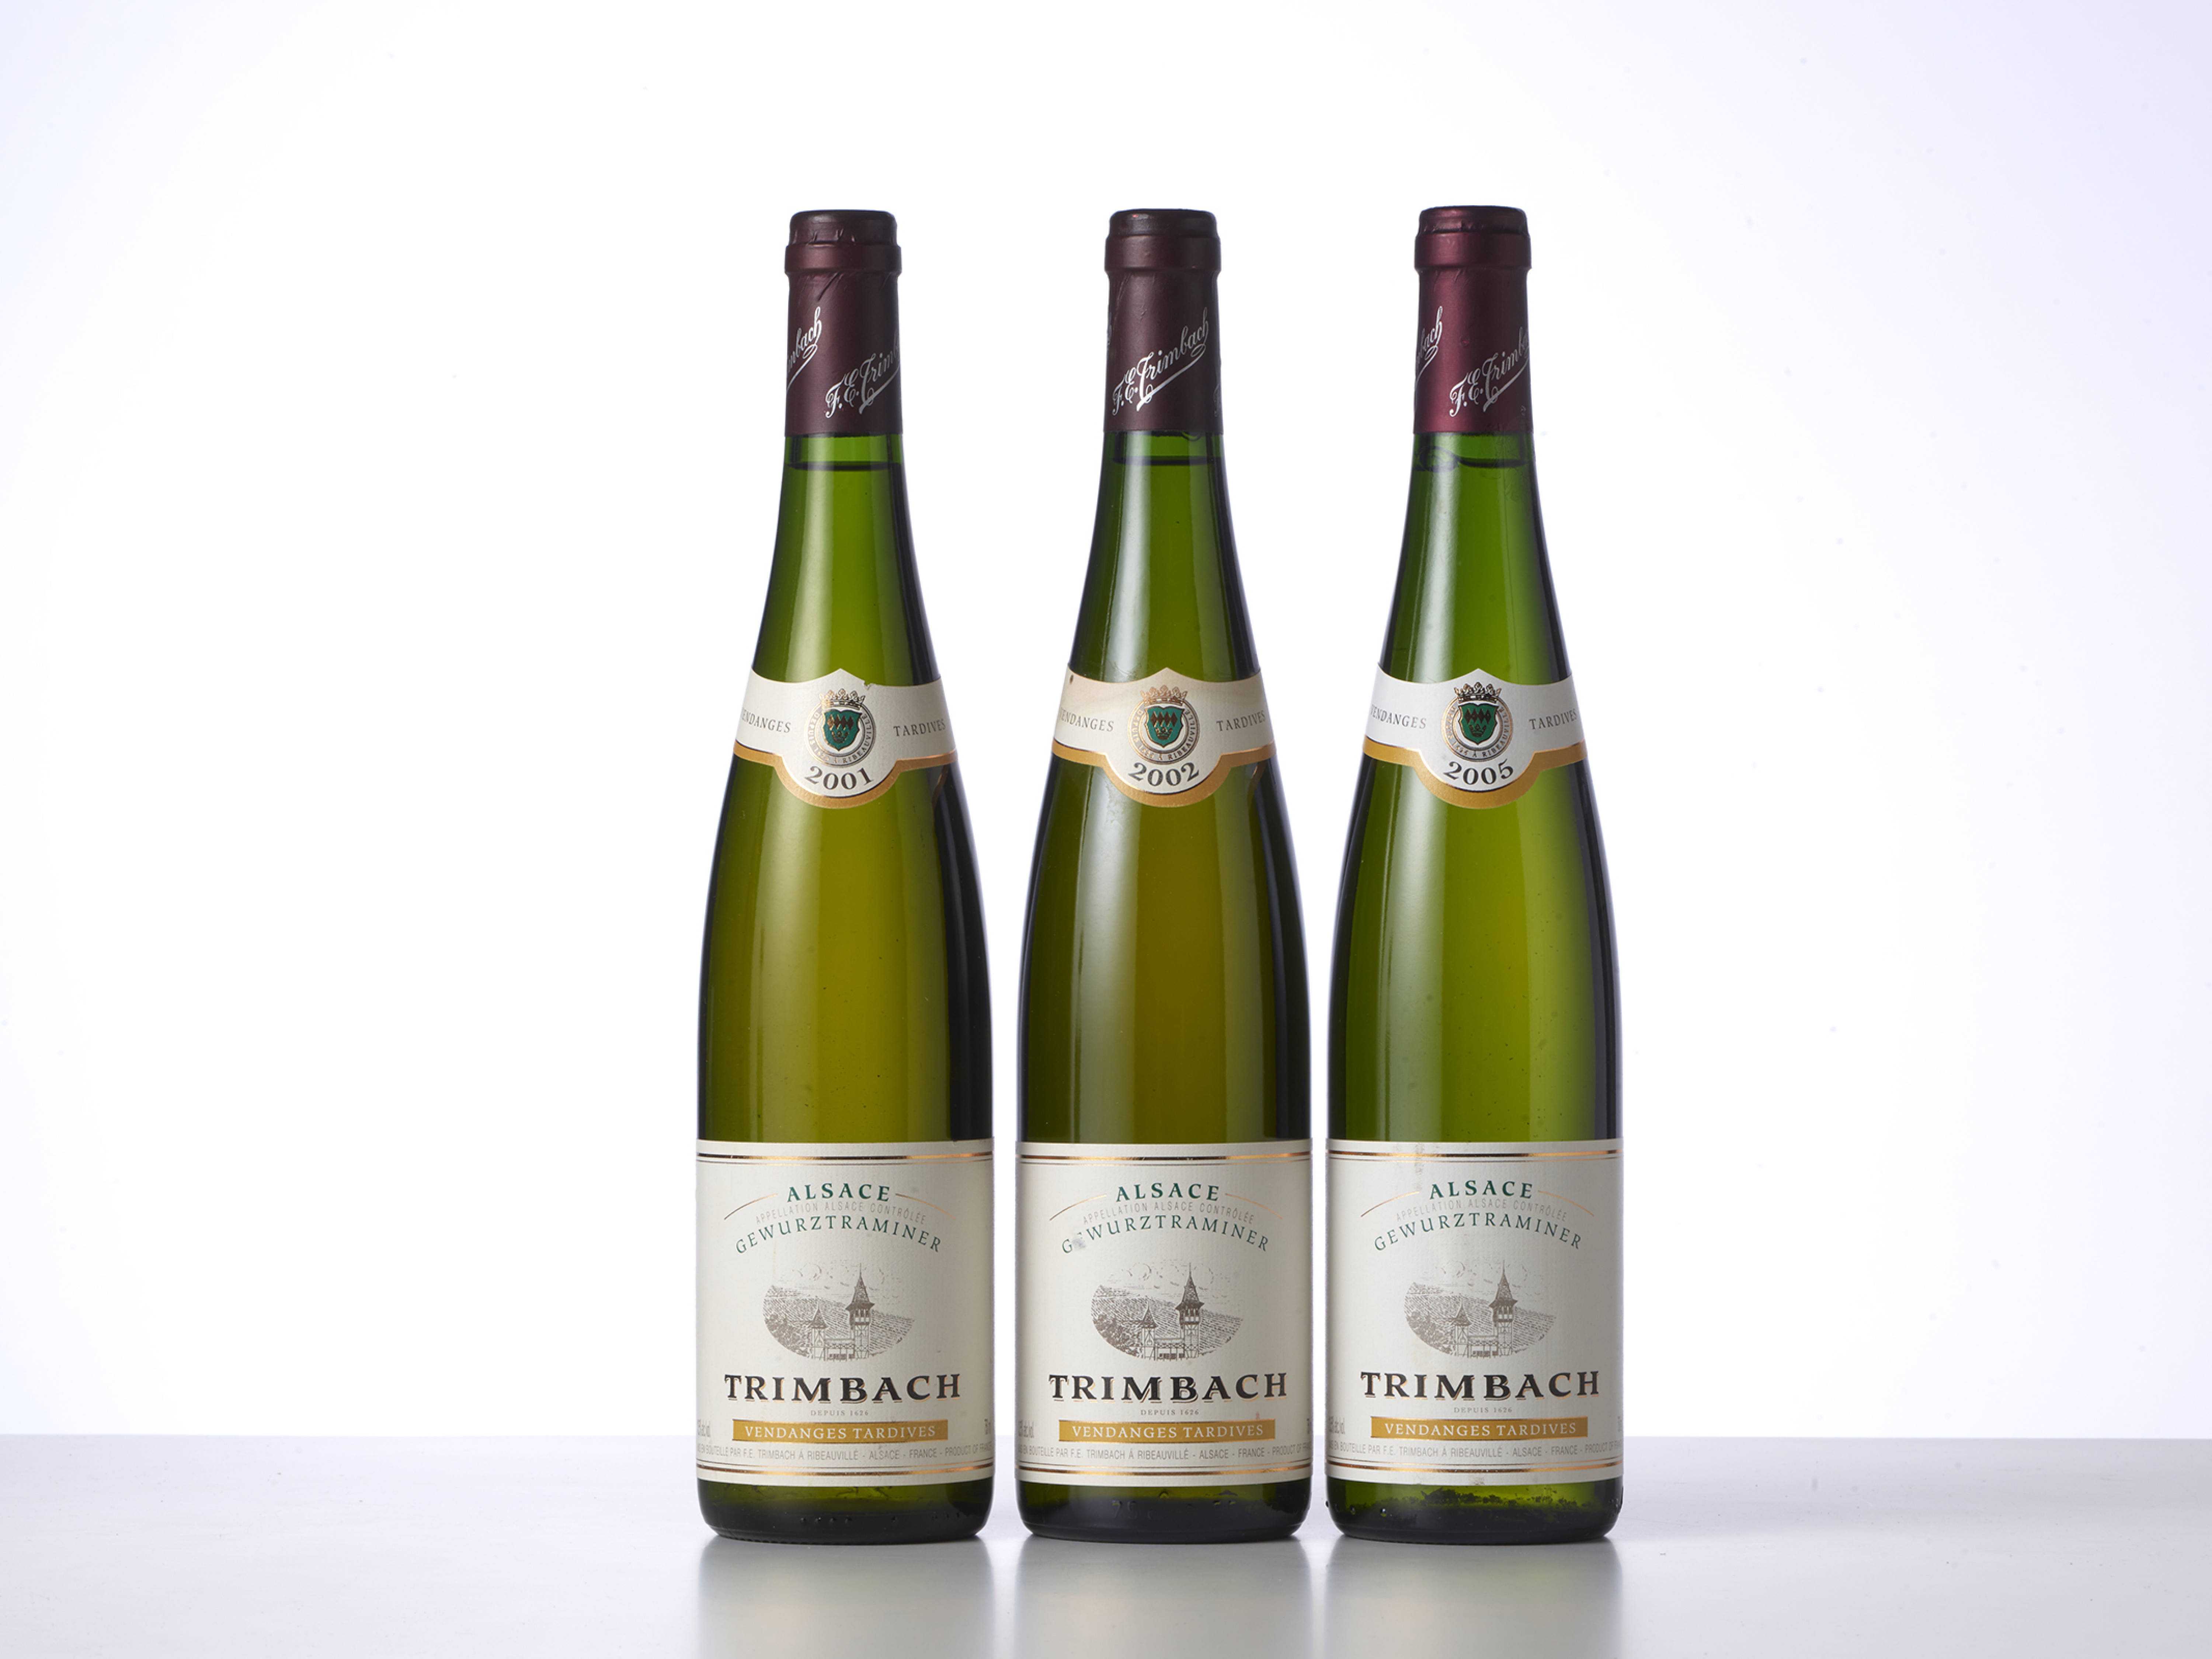 Гевюрцтраминер (gewurztraminer) – ароматное белое вино из эльзаса